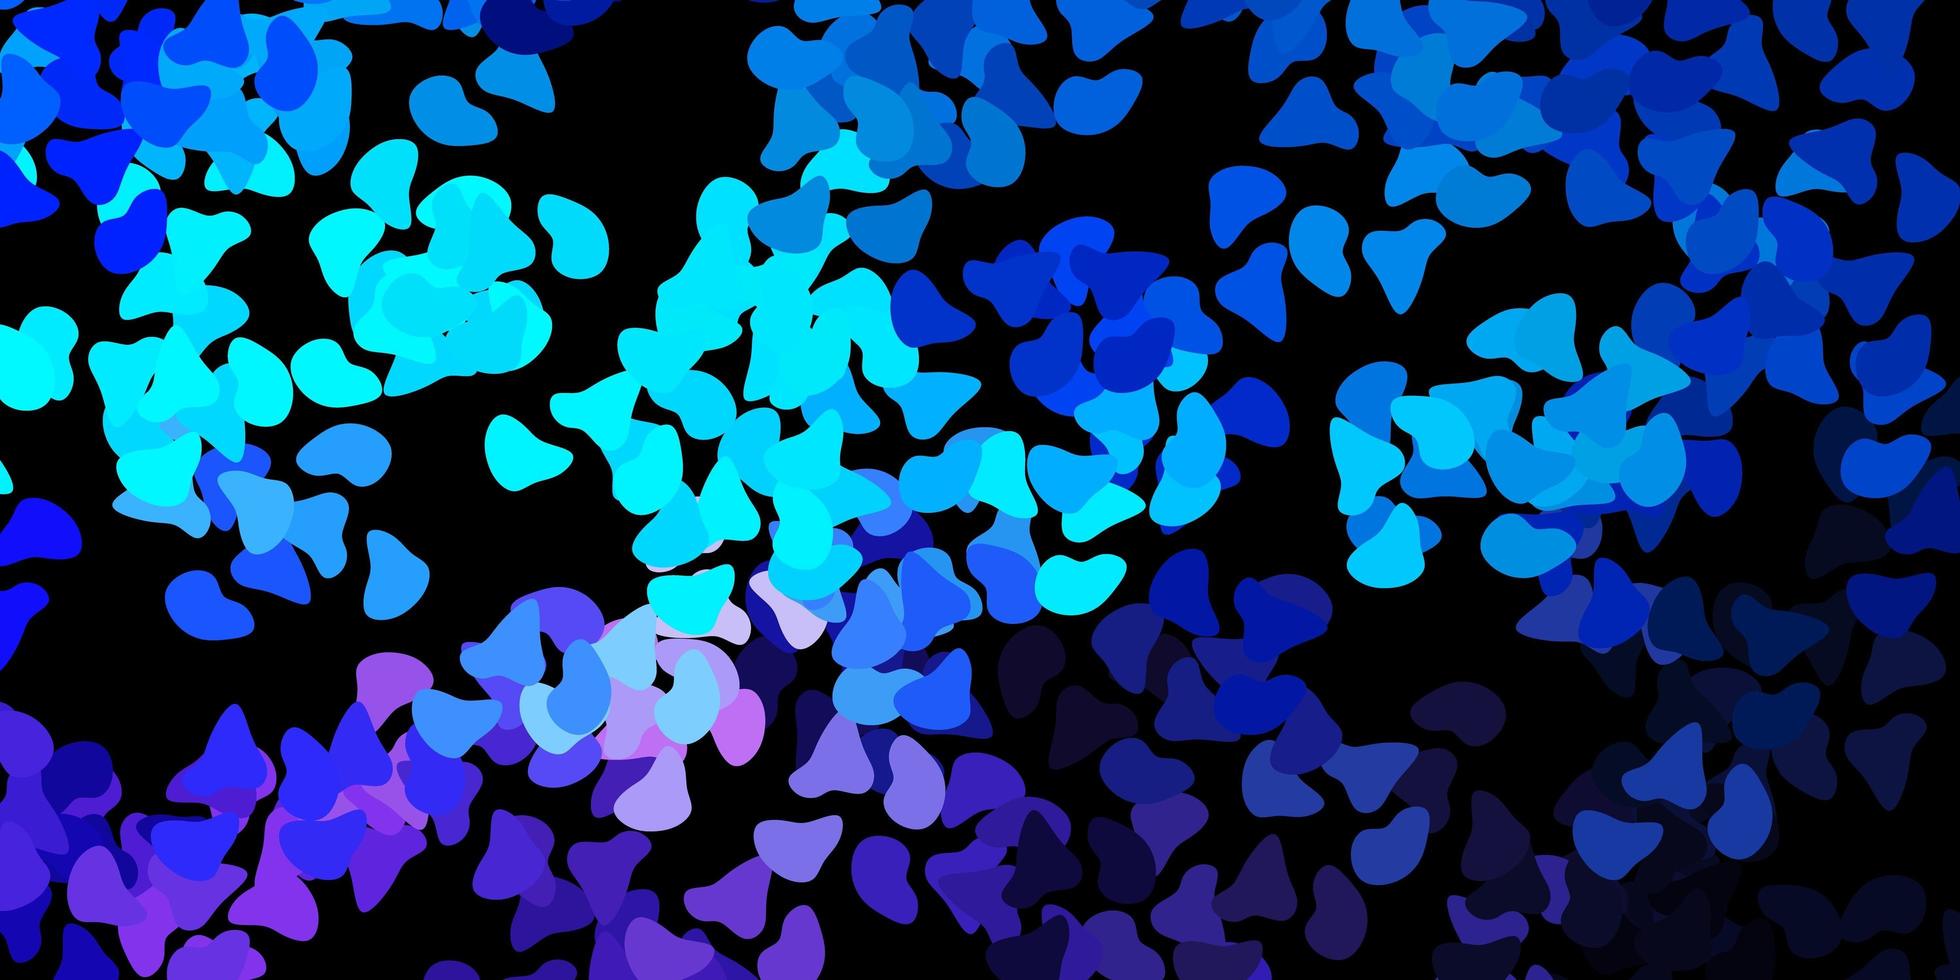 mörkrosa, blå vektormall med abstrakta former. vektor